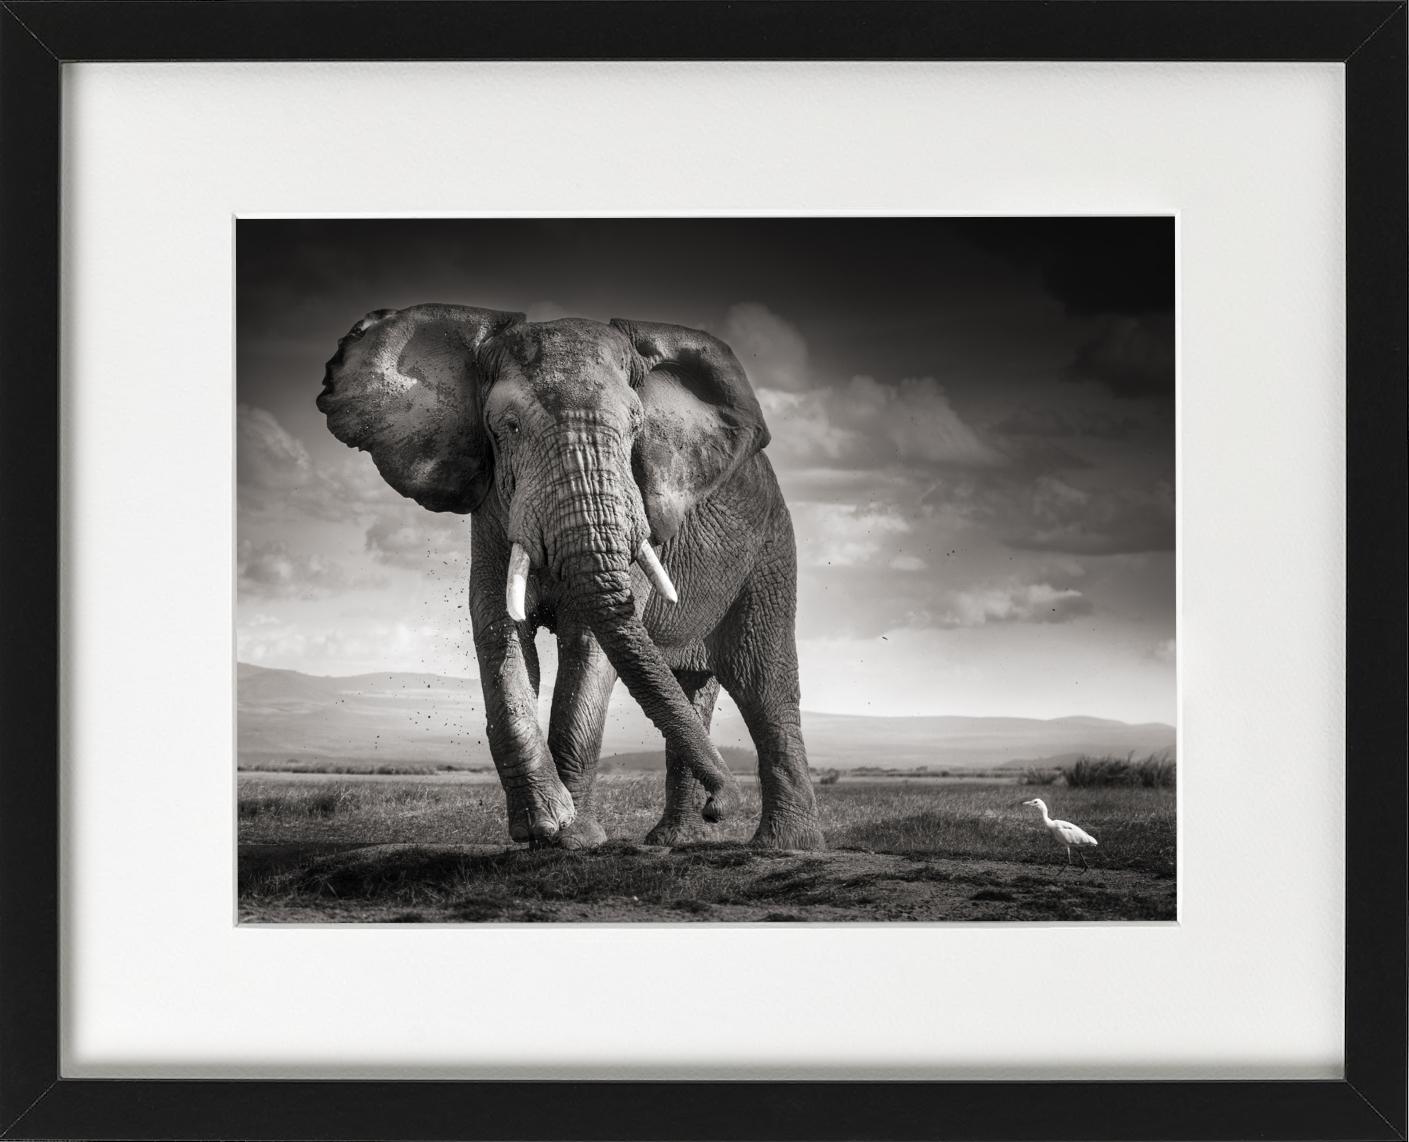 Der Stier und der Vogel – Elefant in der Wüste – Kunstfotografie, 2017 (Zeitgenössisch), Photograph, von Joachim Schmeisser